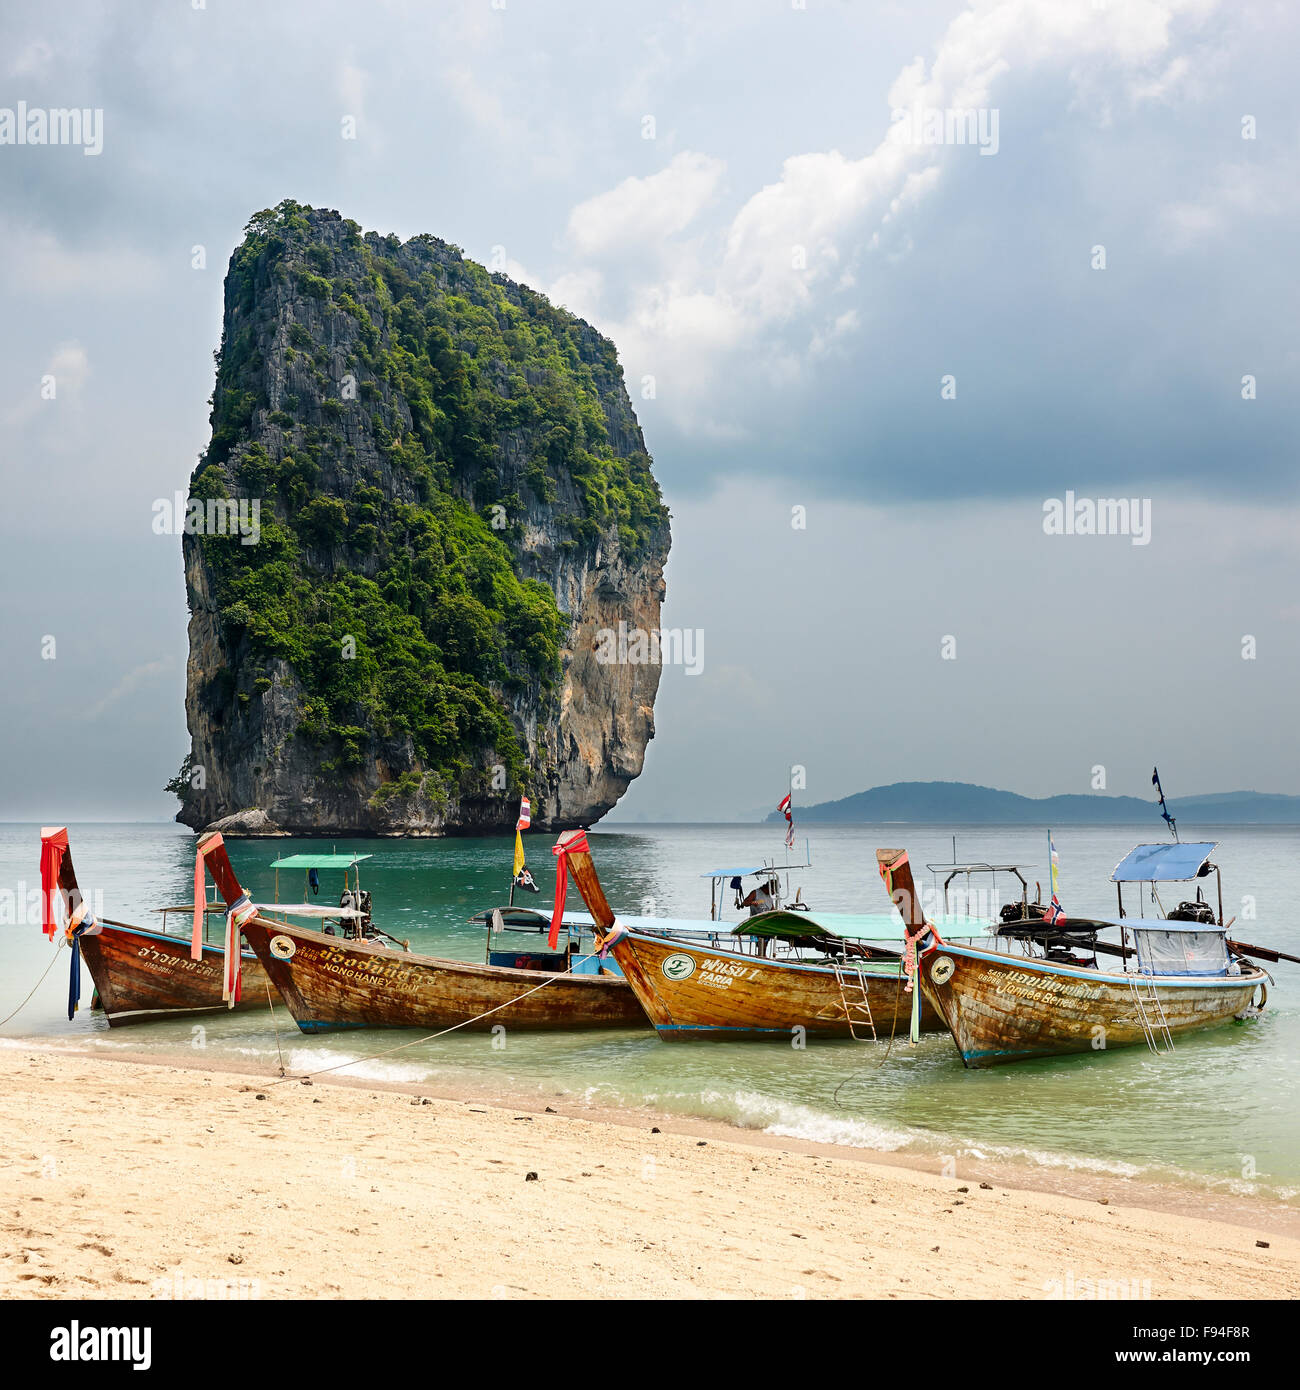 Bateaux Longtail sur la plage. Poda Island (Koh Poda), province de Krabi, Thaïlande. Banque D'Images